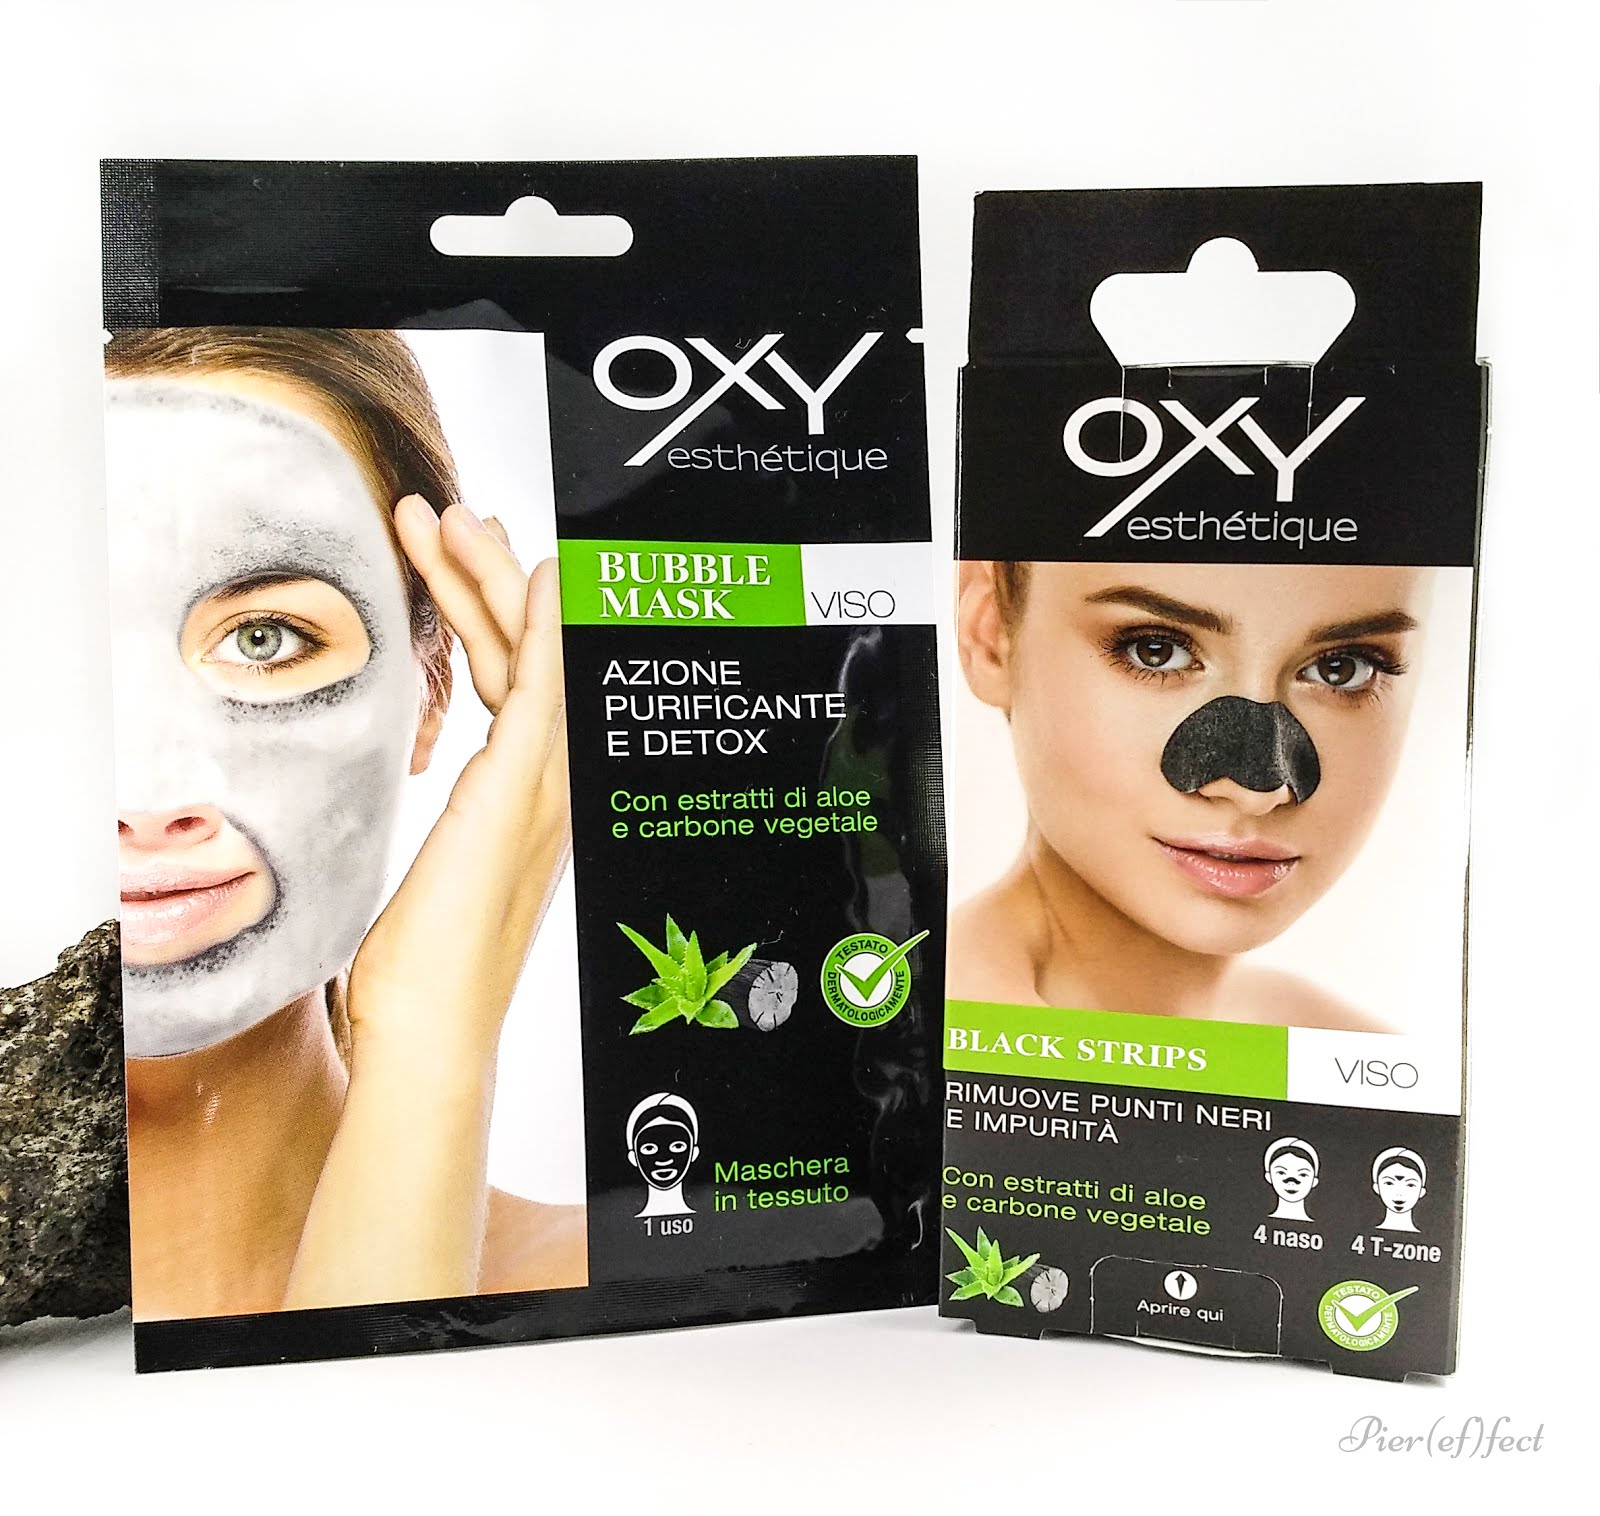 Oxy esthétique Bubble Mask Black Strips  